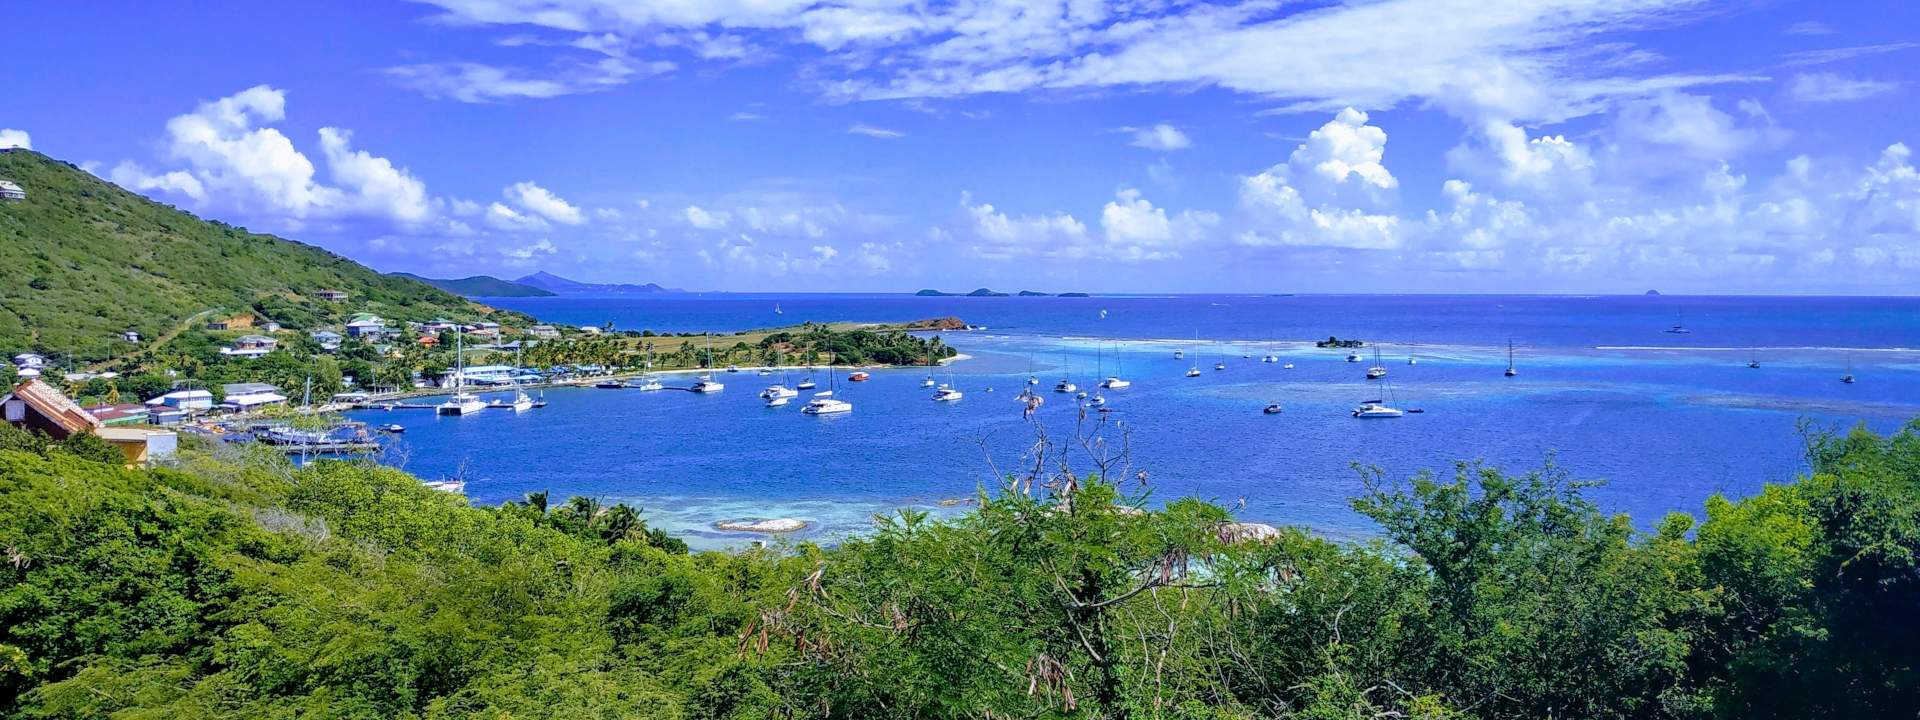 Explorez les Grenadines en catamaran premium avec équipage